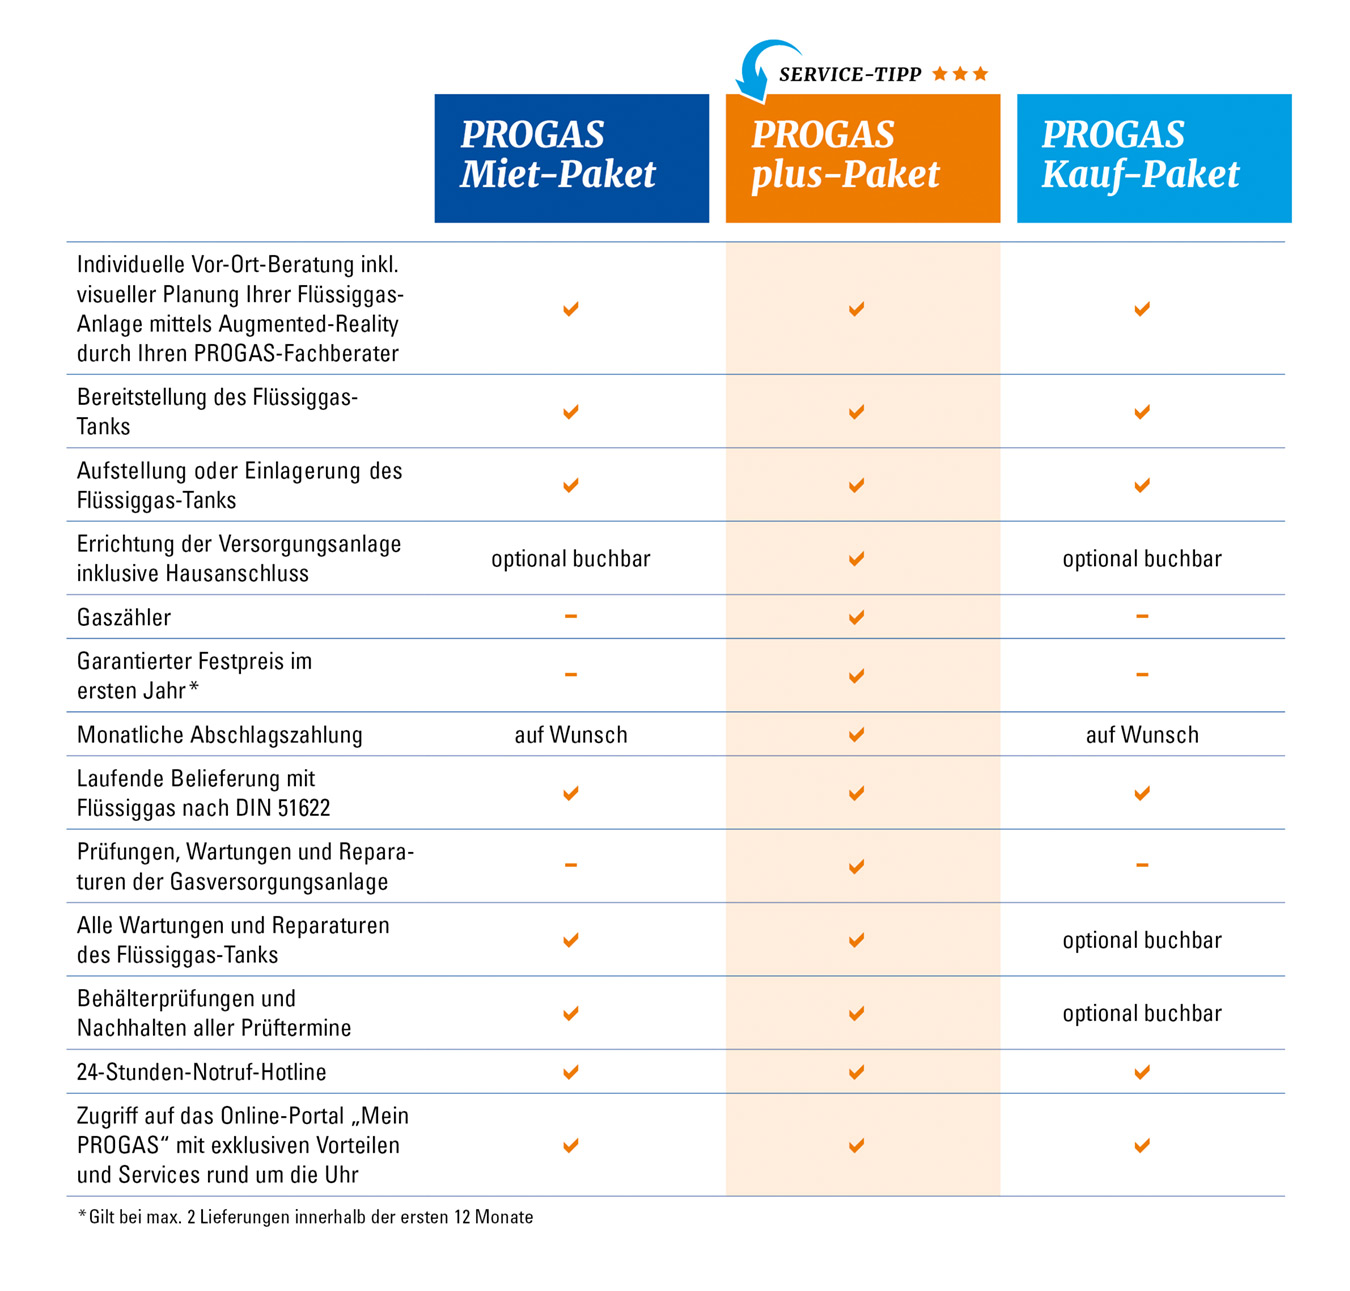 Eine Tabelle erläutert die unterschiedlichen Leistungen der PROGAS-Leistungspakete.